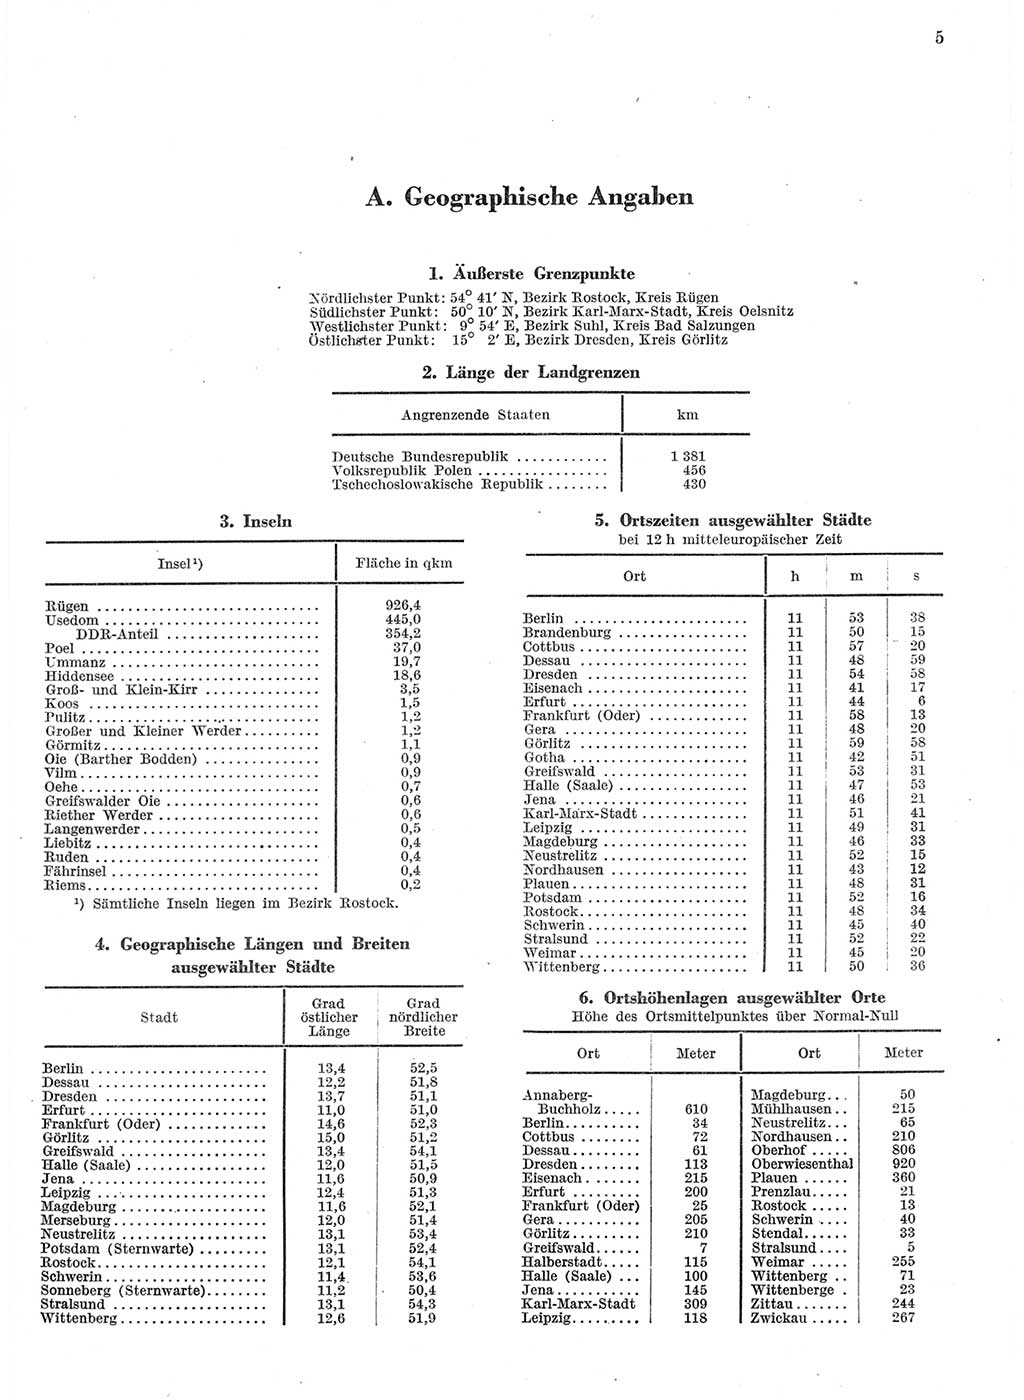 Statistisches Jahrbuch der Deutschen Demokratischen Republik (DDR) 1959, Seite 5 (Stat. Jb. DDR 1959, S. 5)